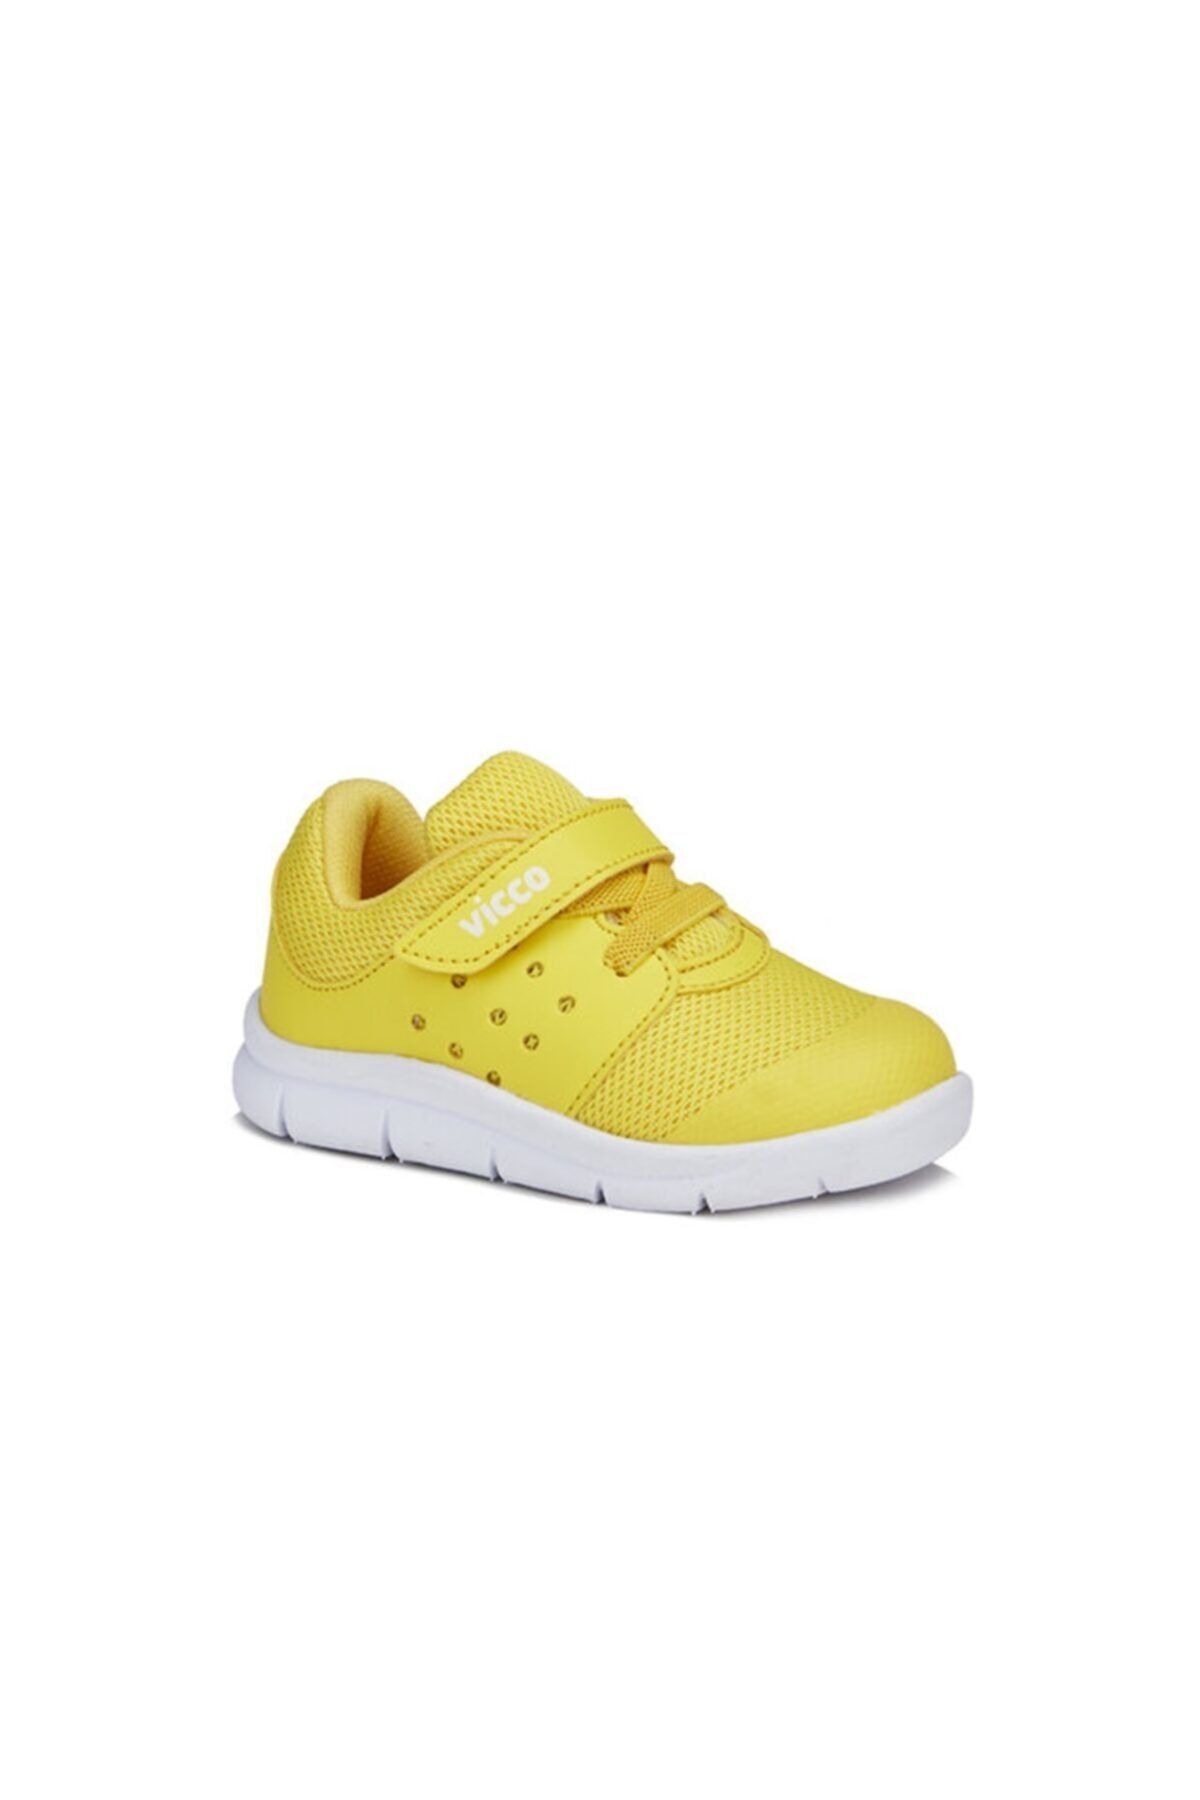 Vicco Unisex Bebek Sarı  Spor Ayakkabı 346.b20y.200